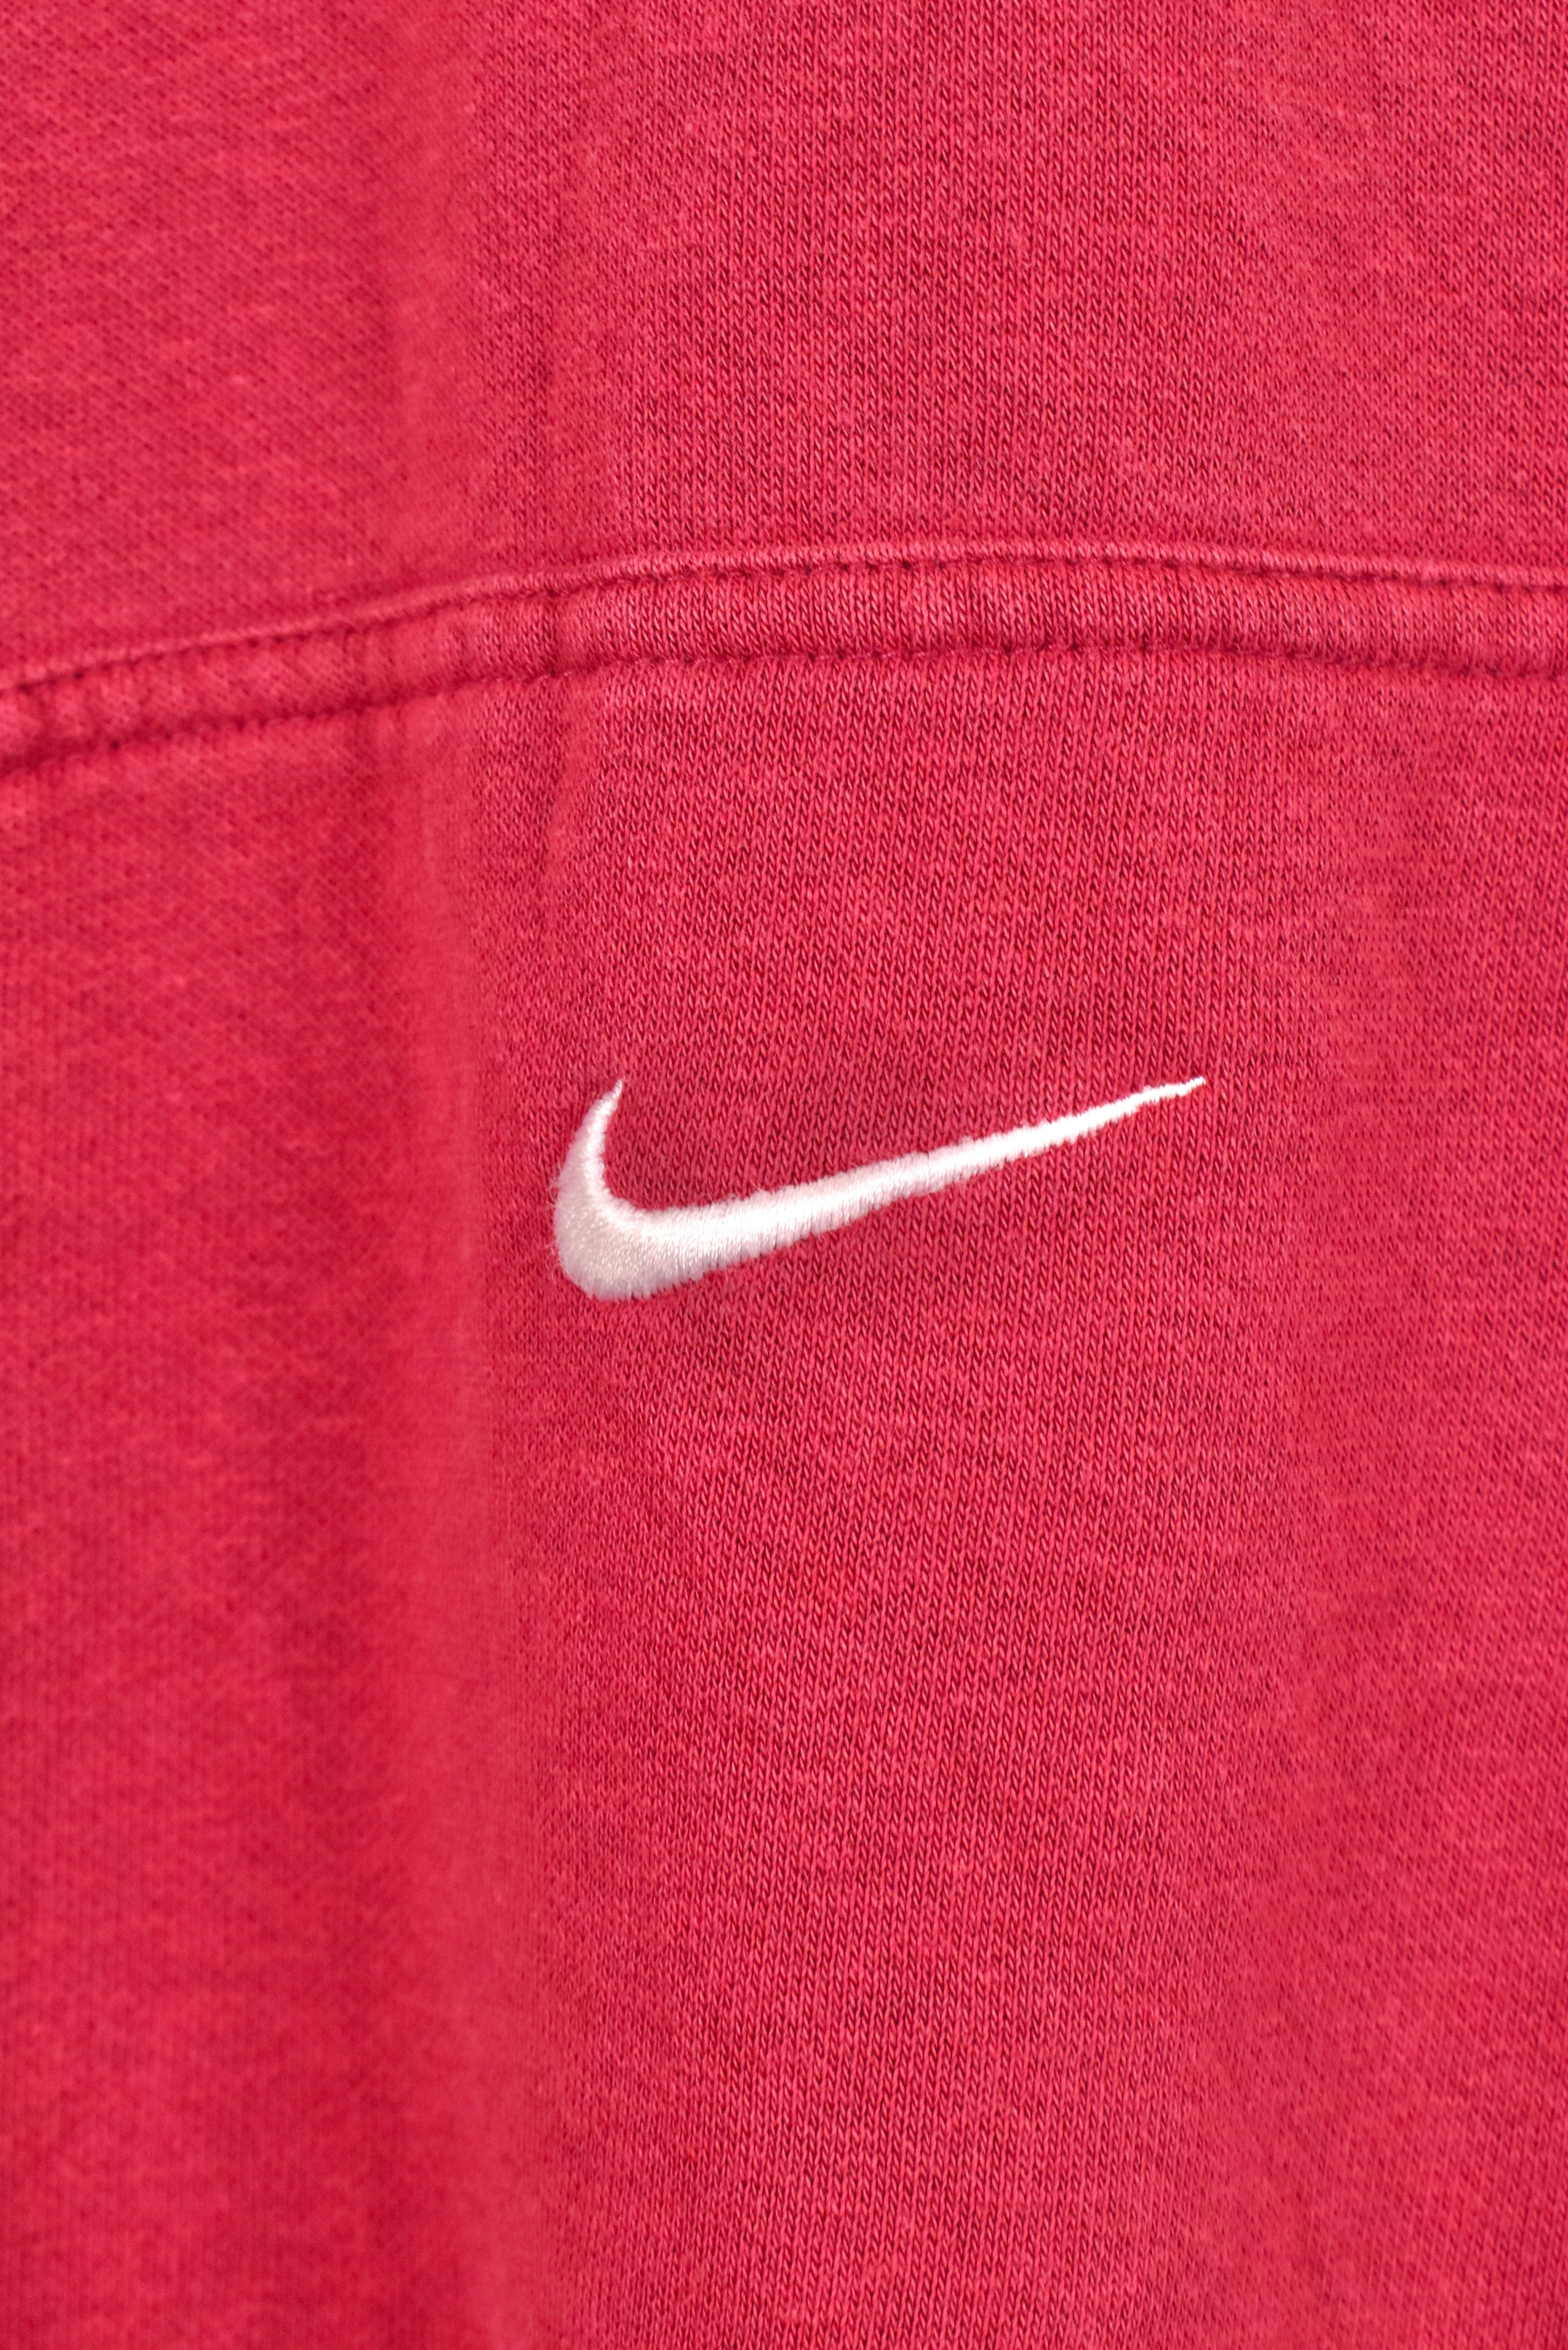 Vintage Nike hoodie, burgundy embroidered sweatshirt - AU Medium NIKE